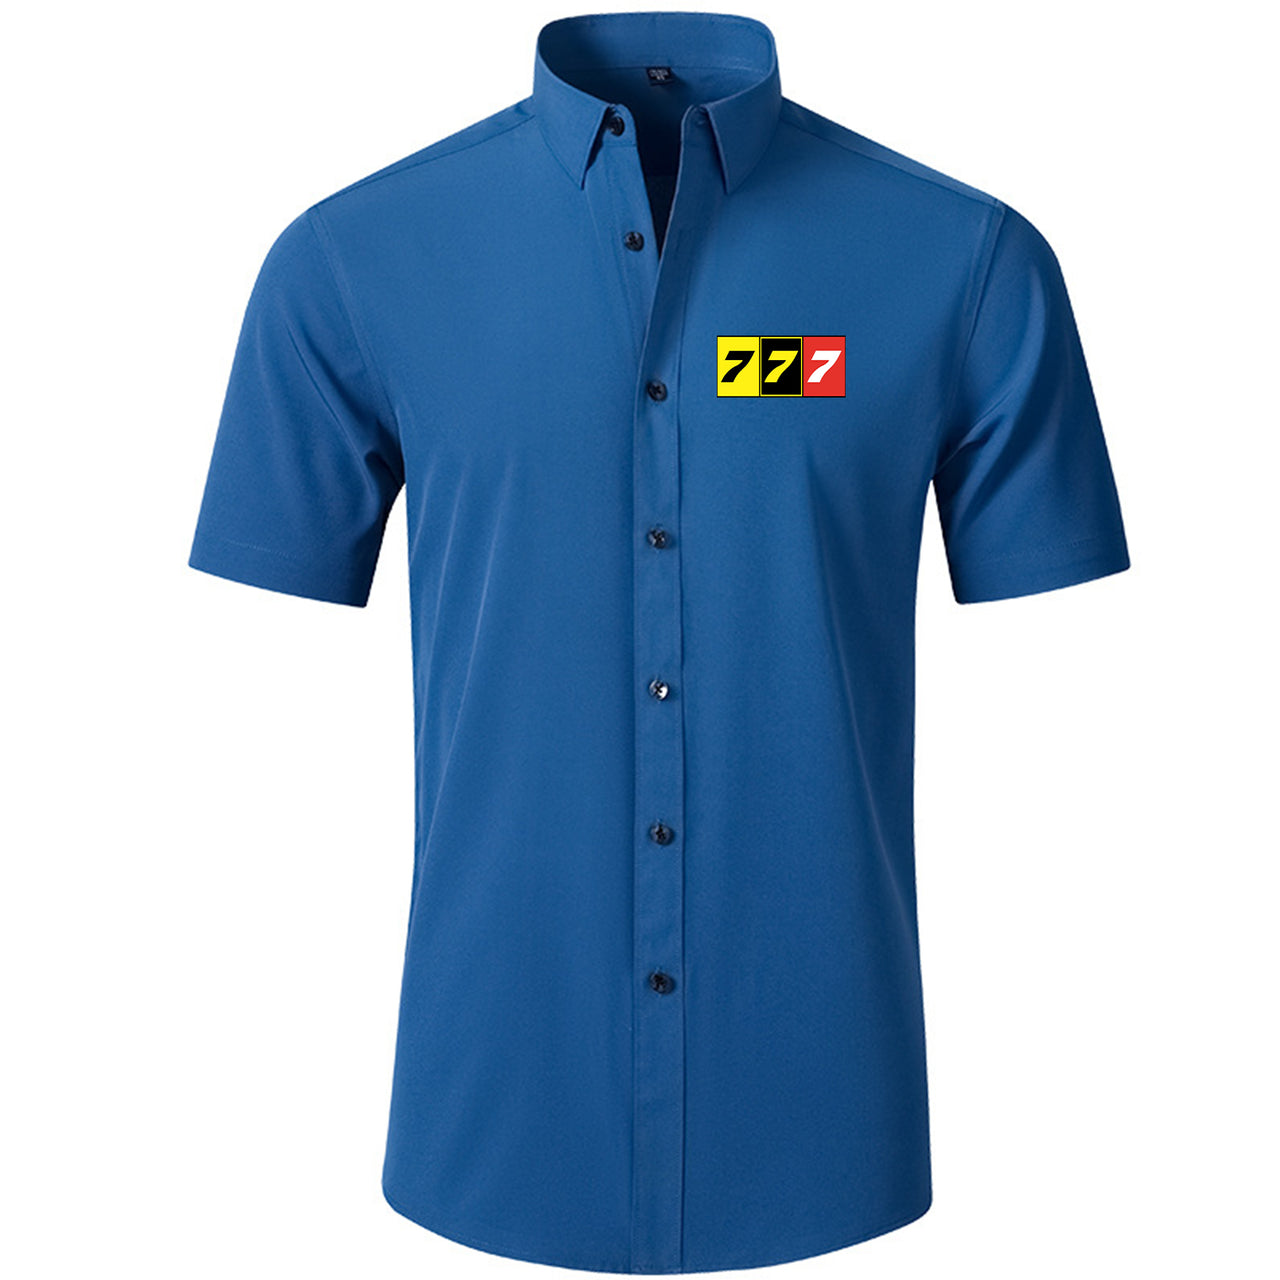 Flat Colourful 777 Designed Short Sleeve Shirts